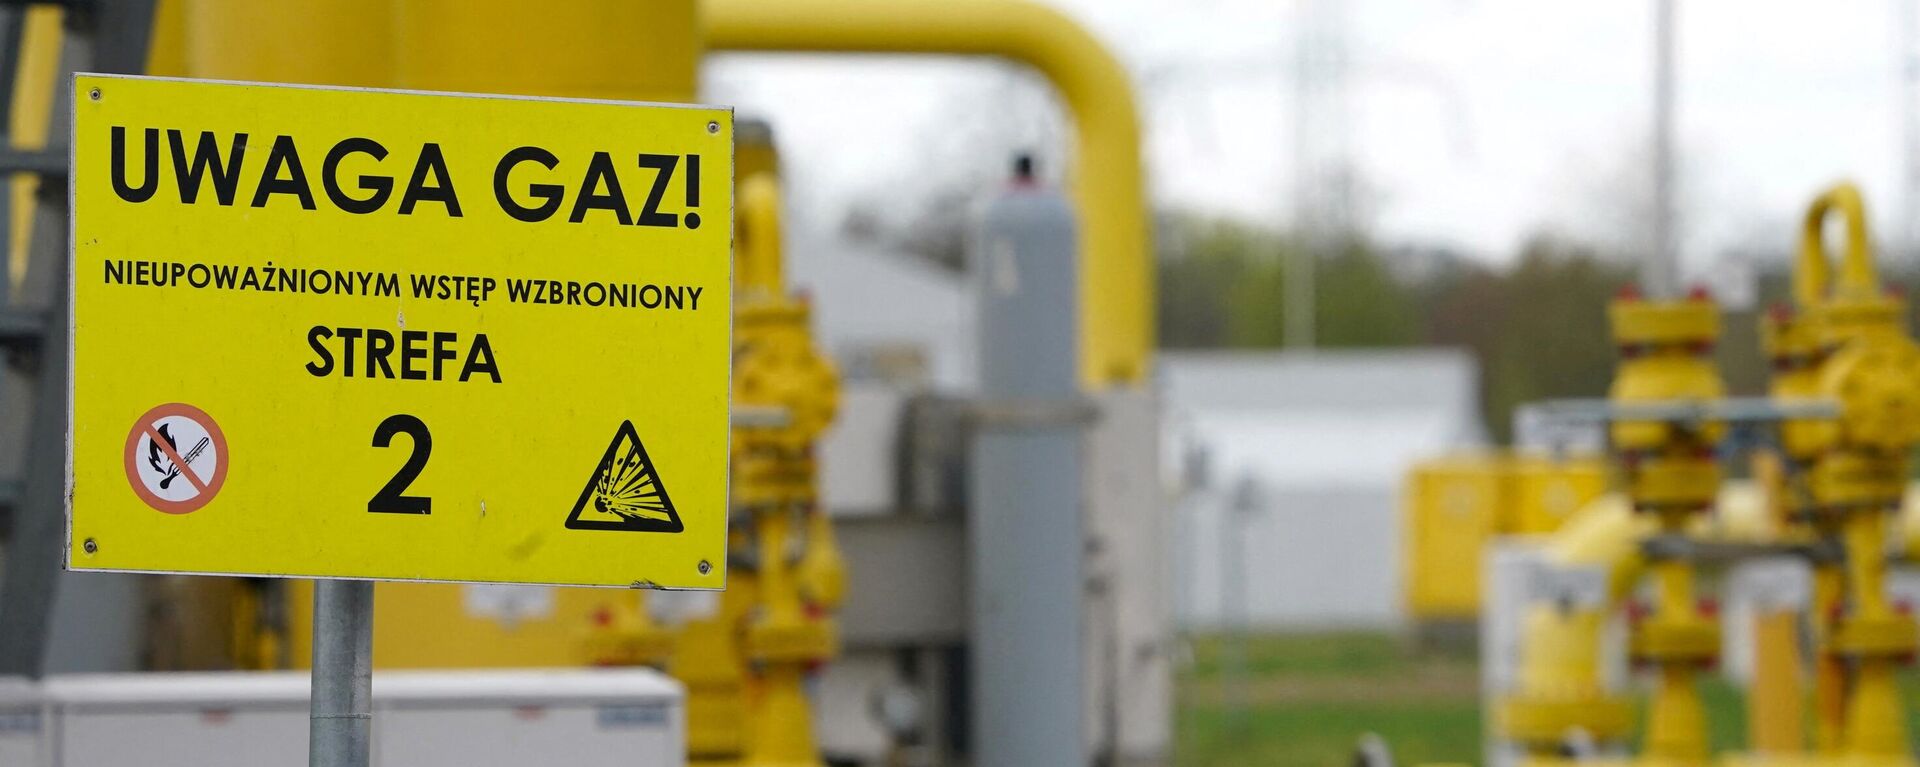 A inscrição em uma placa diz 'Uwaga gaz' (gás de atenção) no ponto de transmissão de gás em Rembelszczyzna, perto de Varsóvia, em 27 de abril de 2022. - Sputnik Brasil, 1920, 28.04.2022